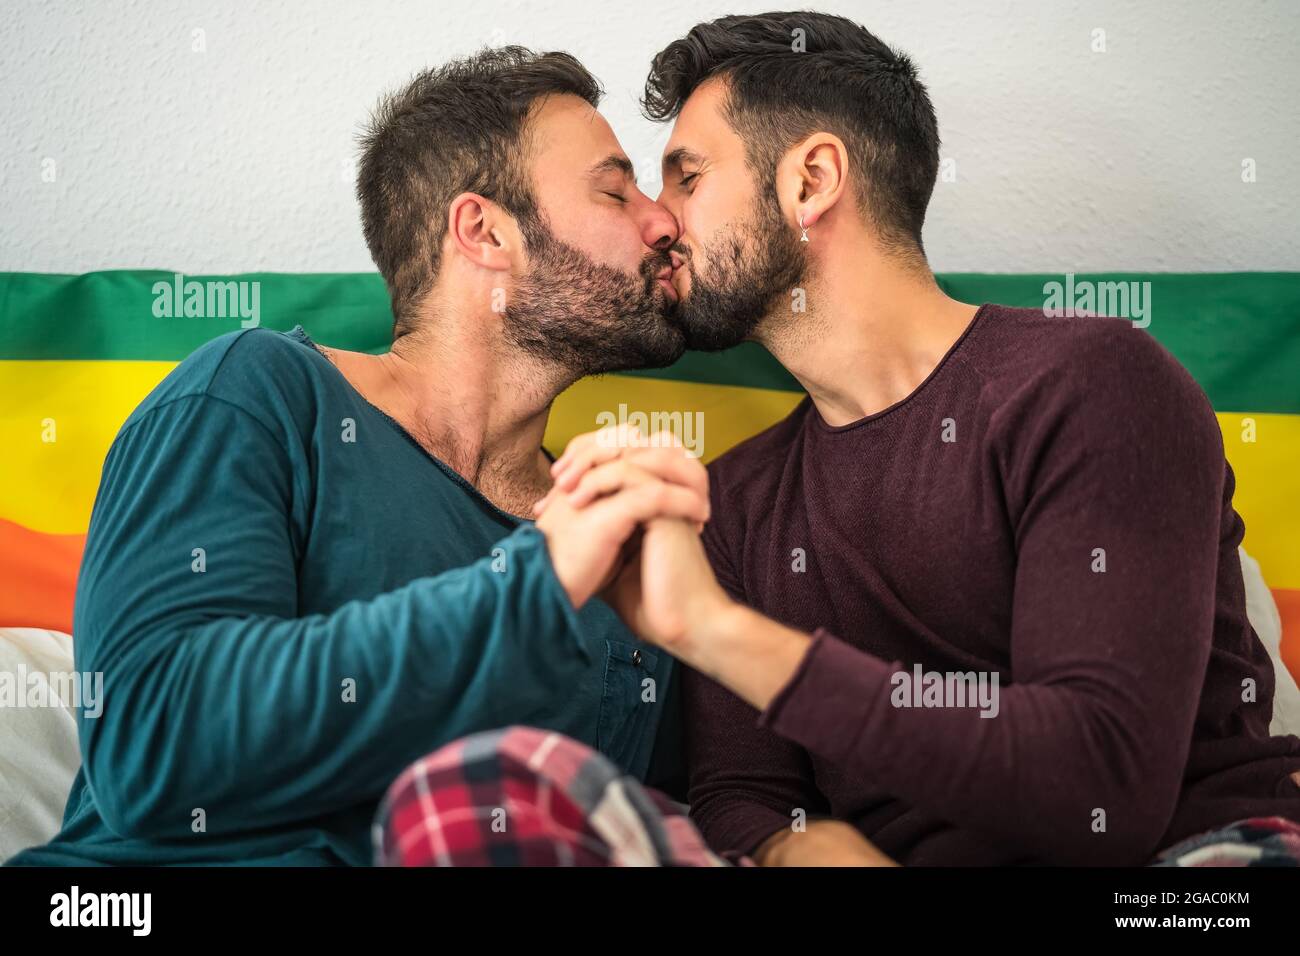 Glücklich Gay Paar mit romantischen Momenten küssen im Bett - homosexuelle Liebesbeziehung und Gleichstellung der Geschlechter Konzept Stockfoto